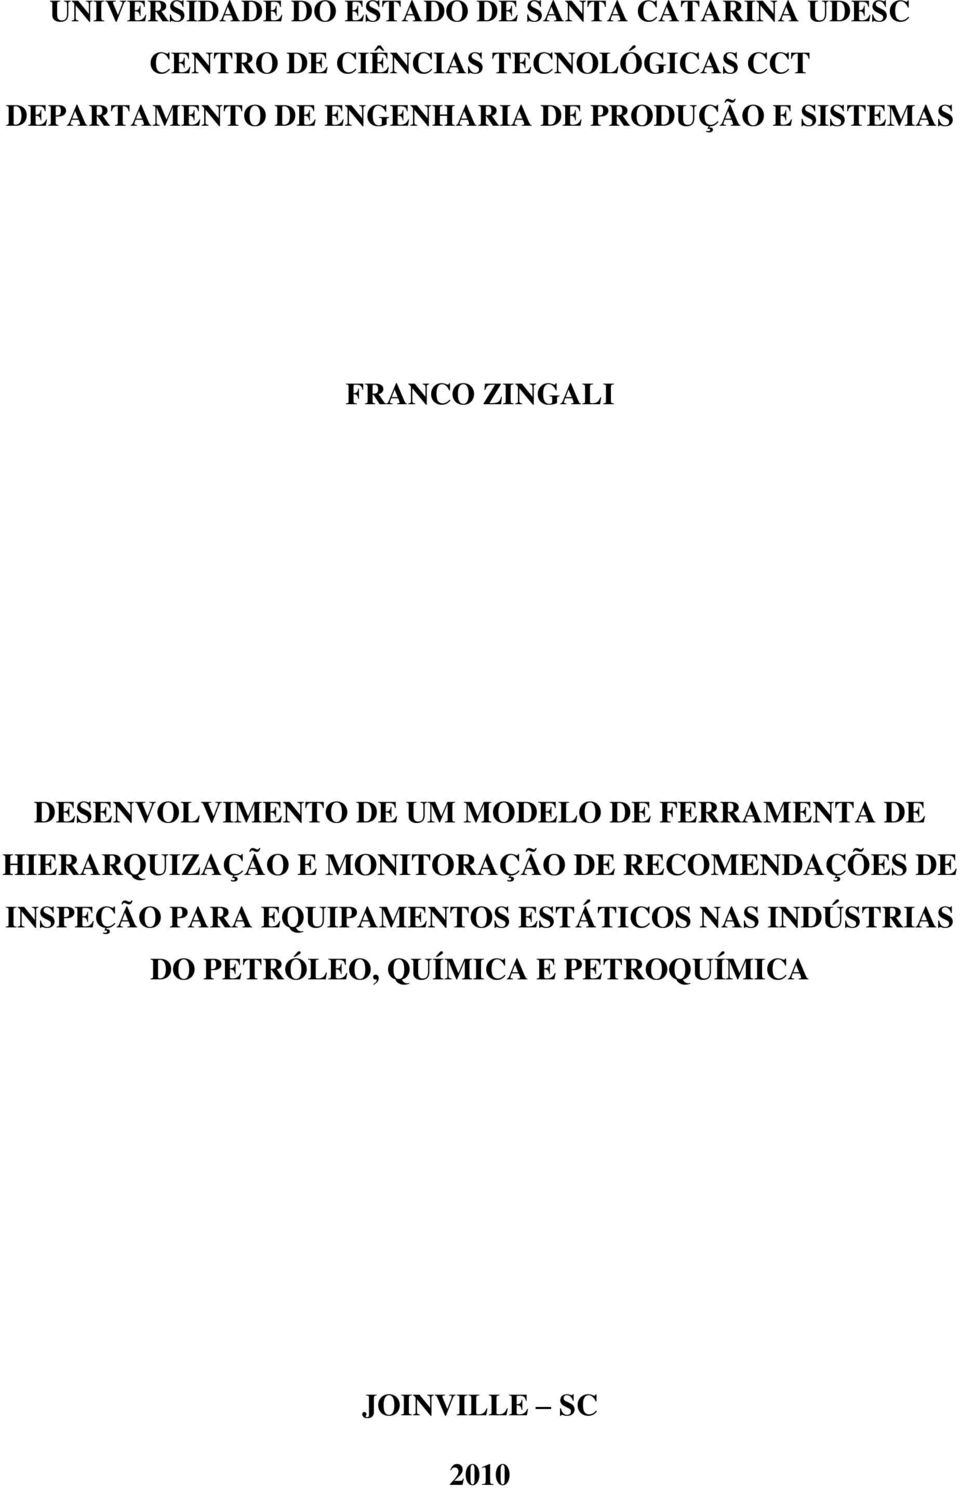 MODELO DE FERRAMENTA DE HIERARQUIZAÇÃO E MONITORAÇÃO DE RECOMENDAÇÕES DE INSPEÇÃO PARA